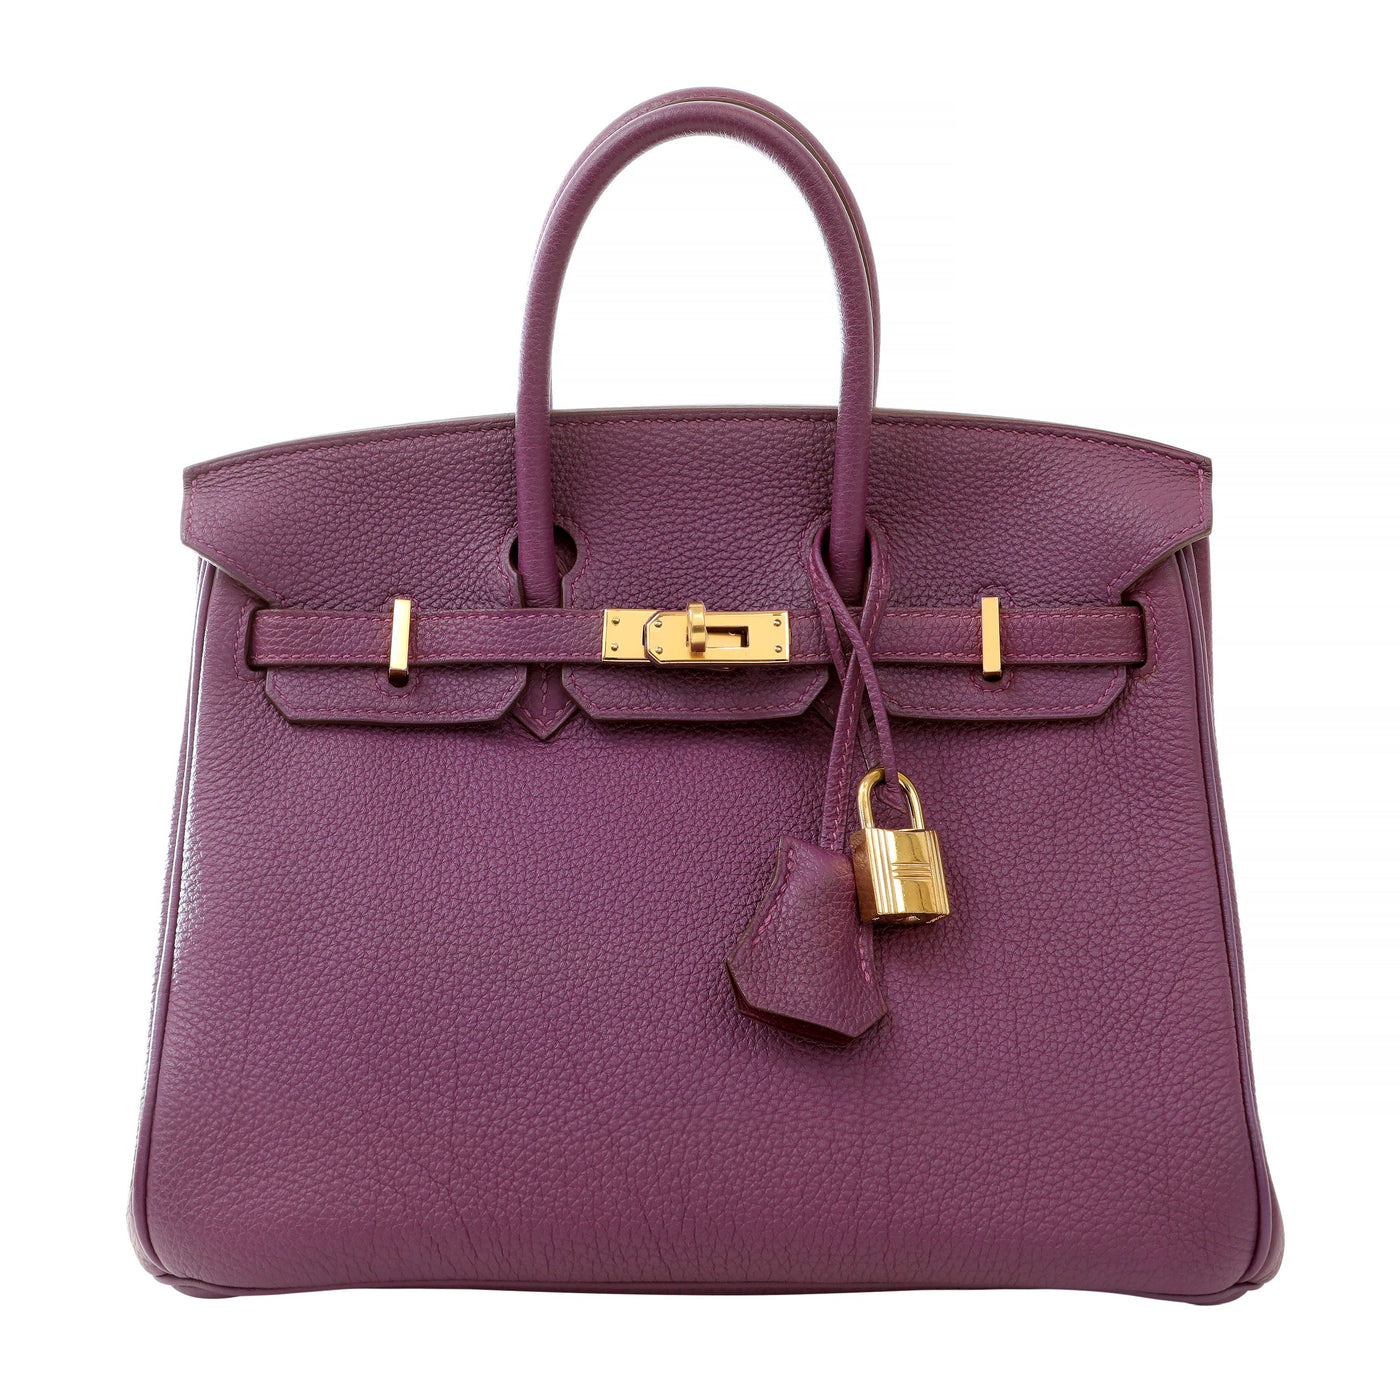 Hermès 25 cm Purple Togo Birkin with Gold Hardware